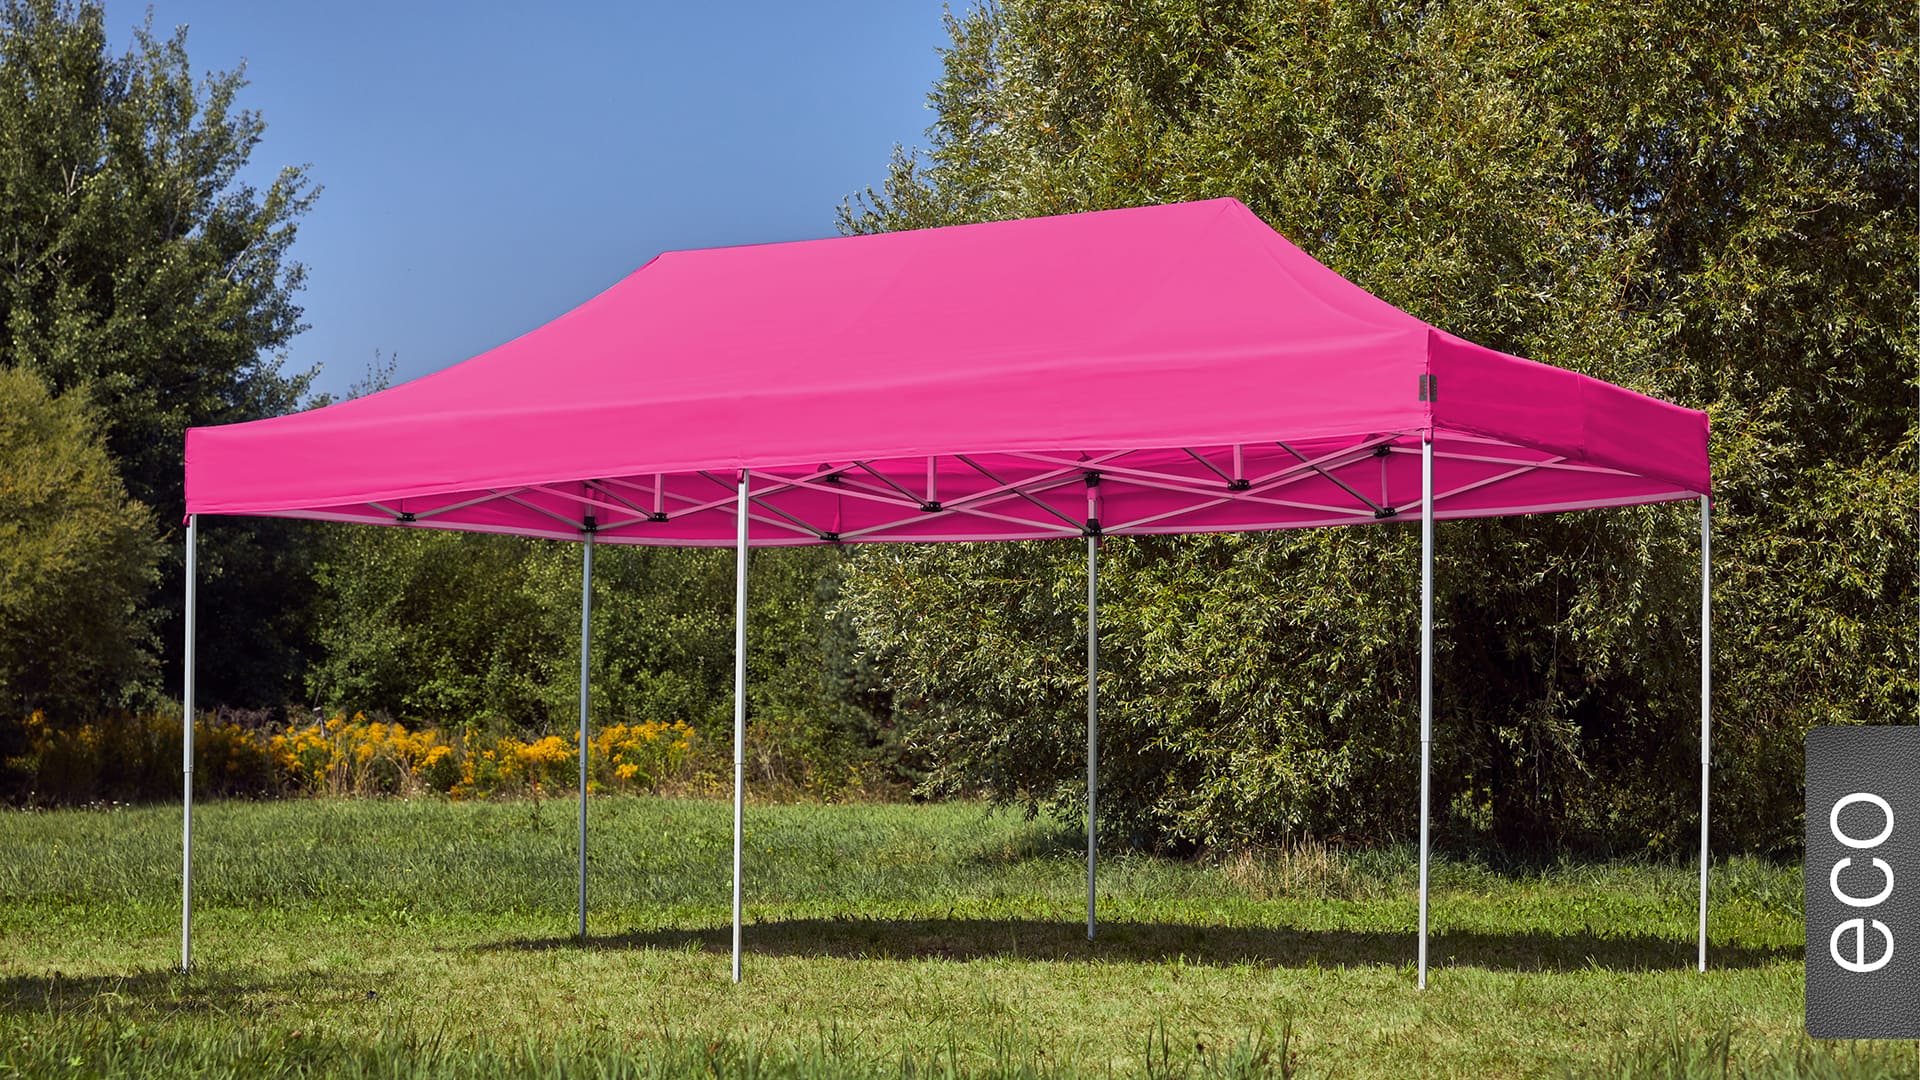 Der 6x3 Faltpavillon der Produktlinie eco mit einem pinken Dach aufgestellt im Garten.